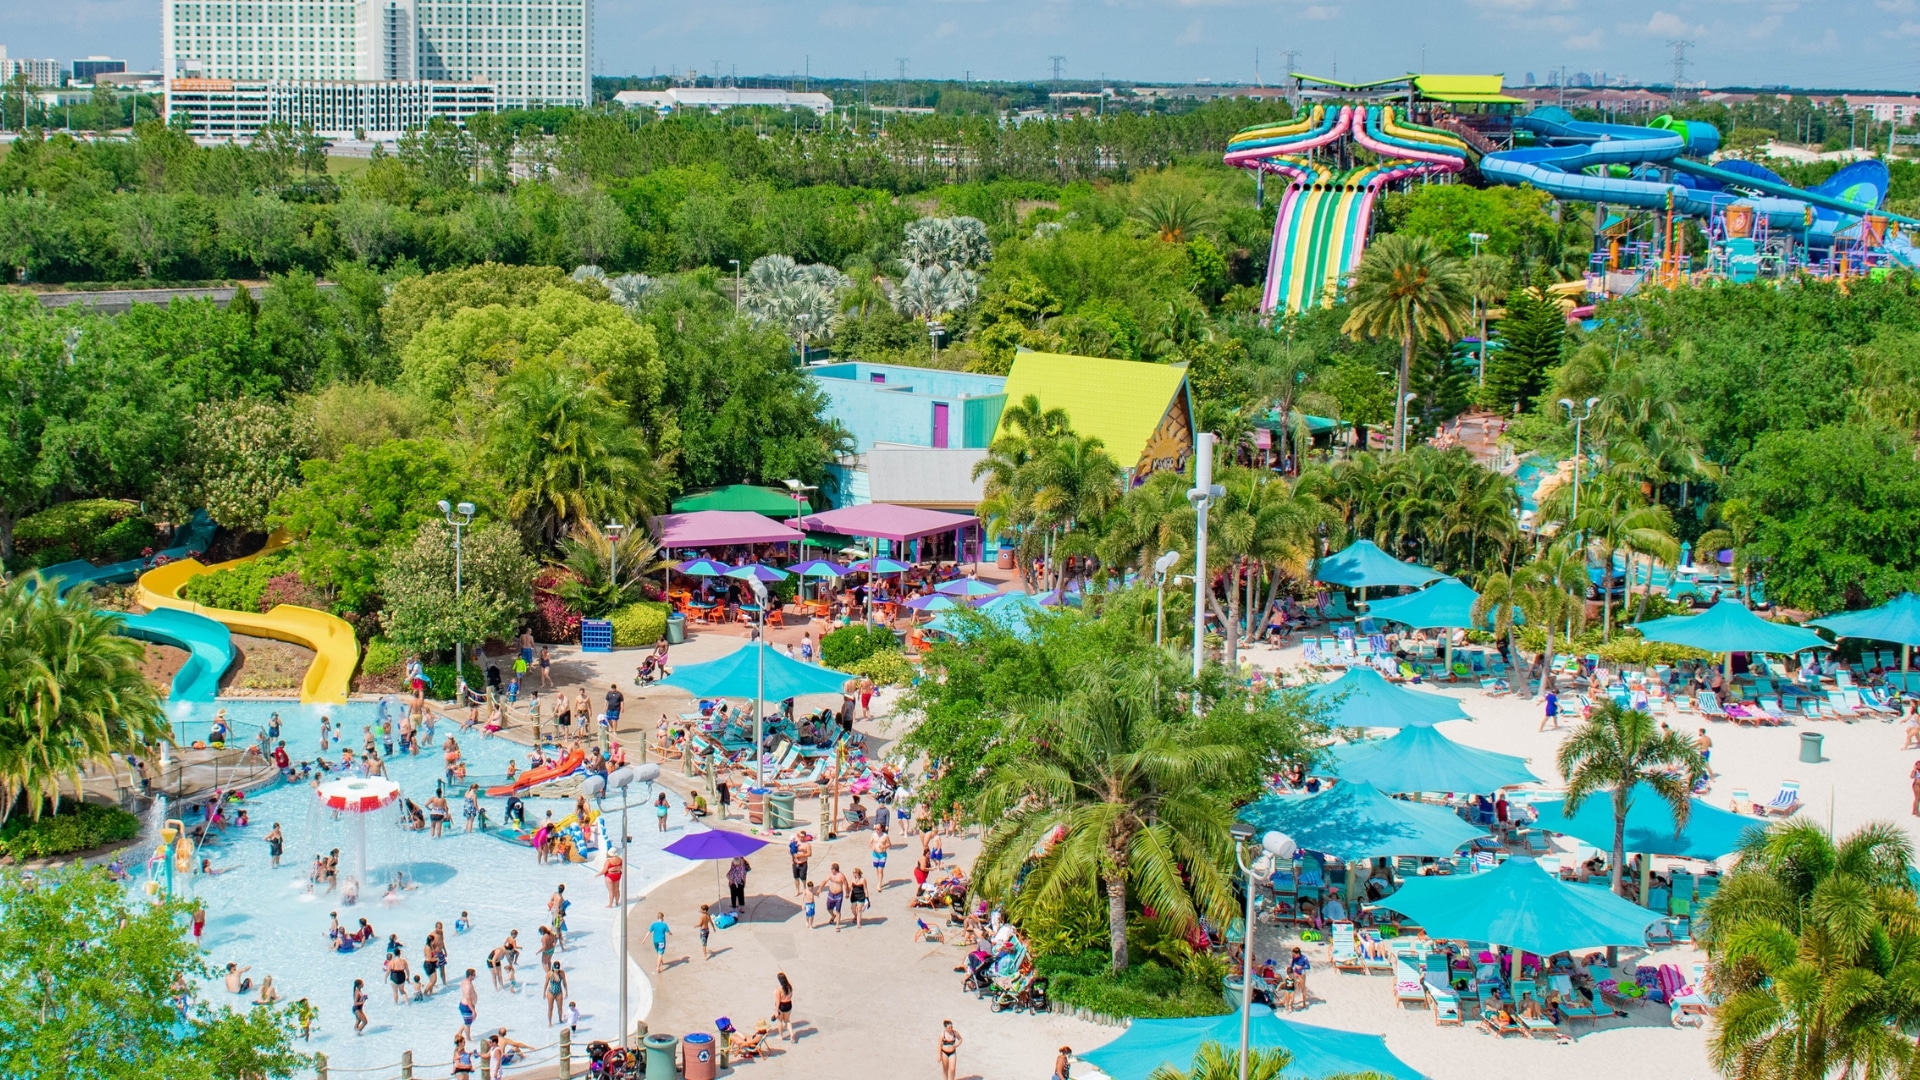 Aquatica Water Park in Orlando - Fun for the Entire Family